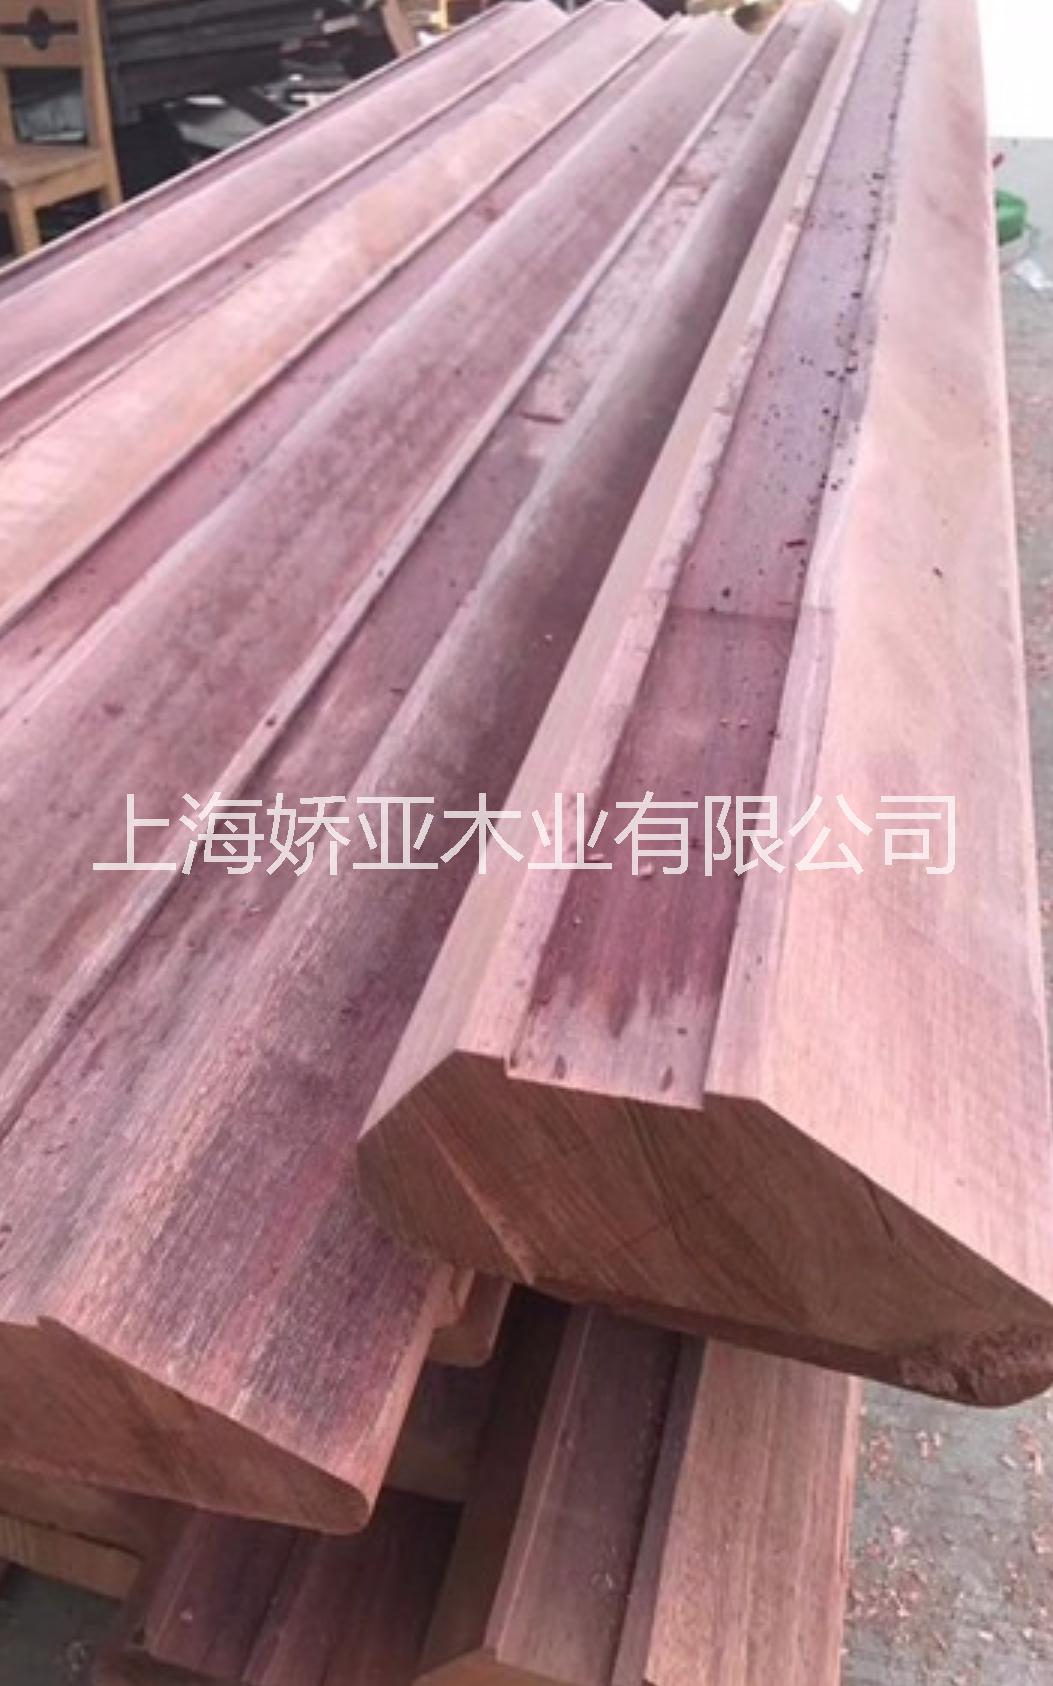 上海柳桉木防腐木价格, 柳桉木方料园林古建